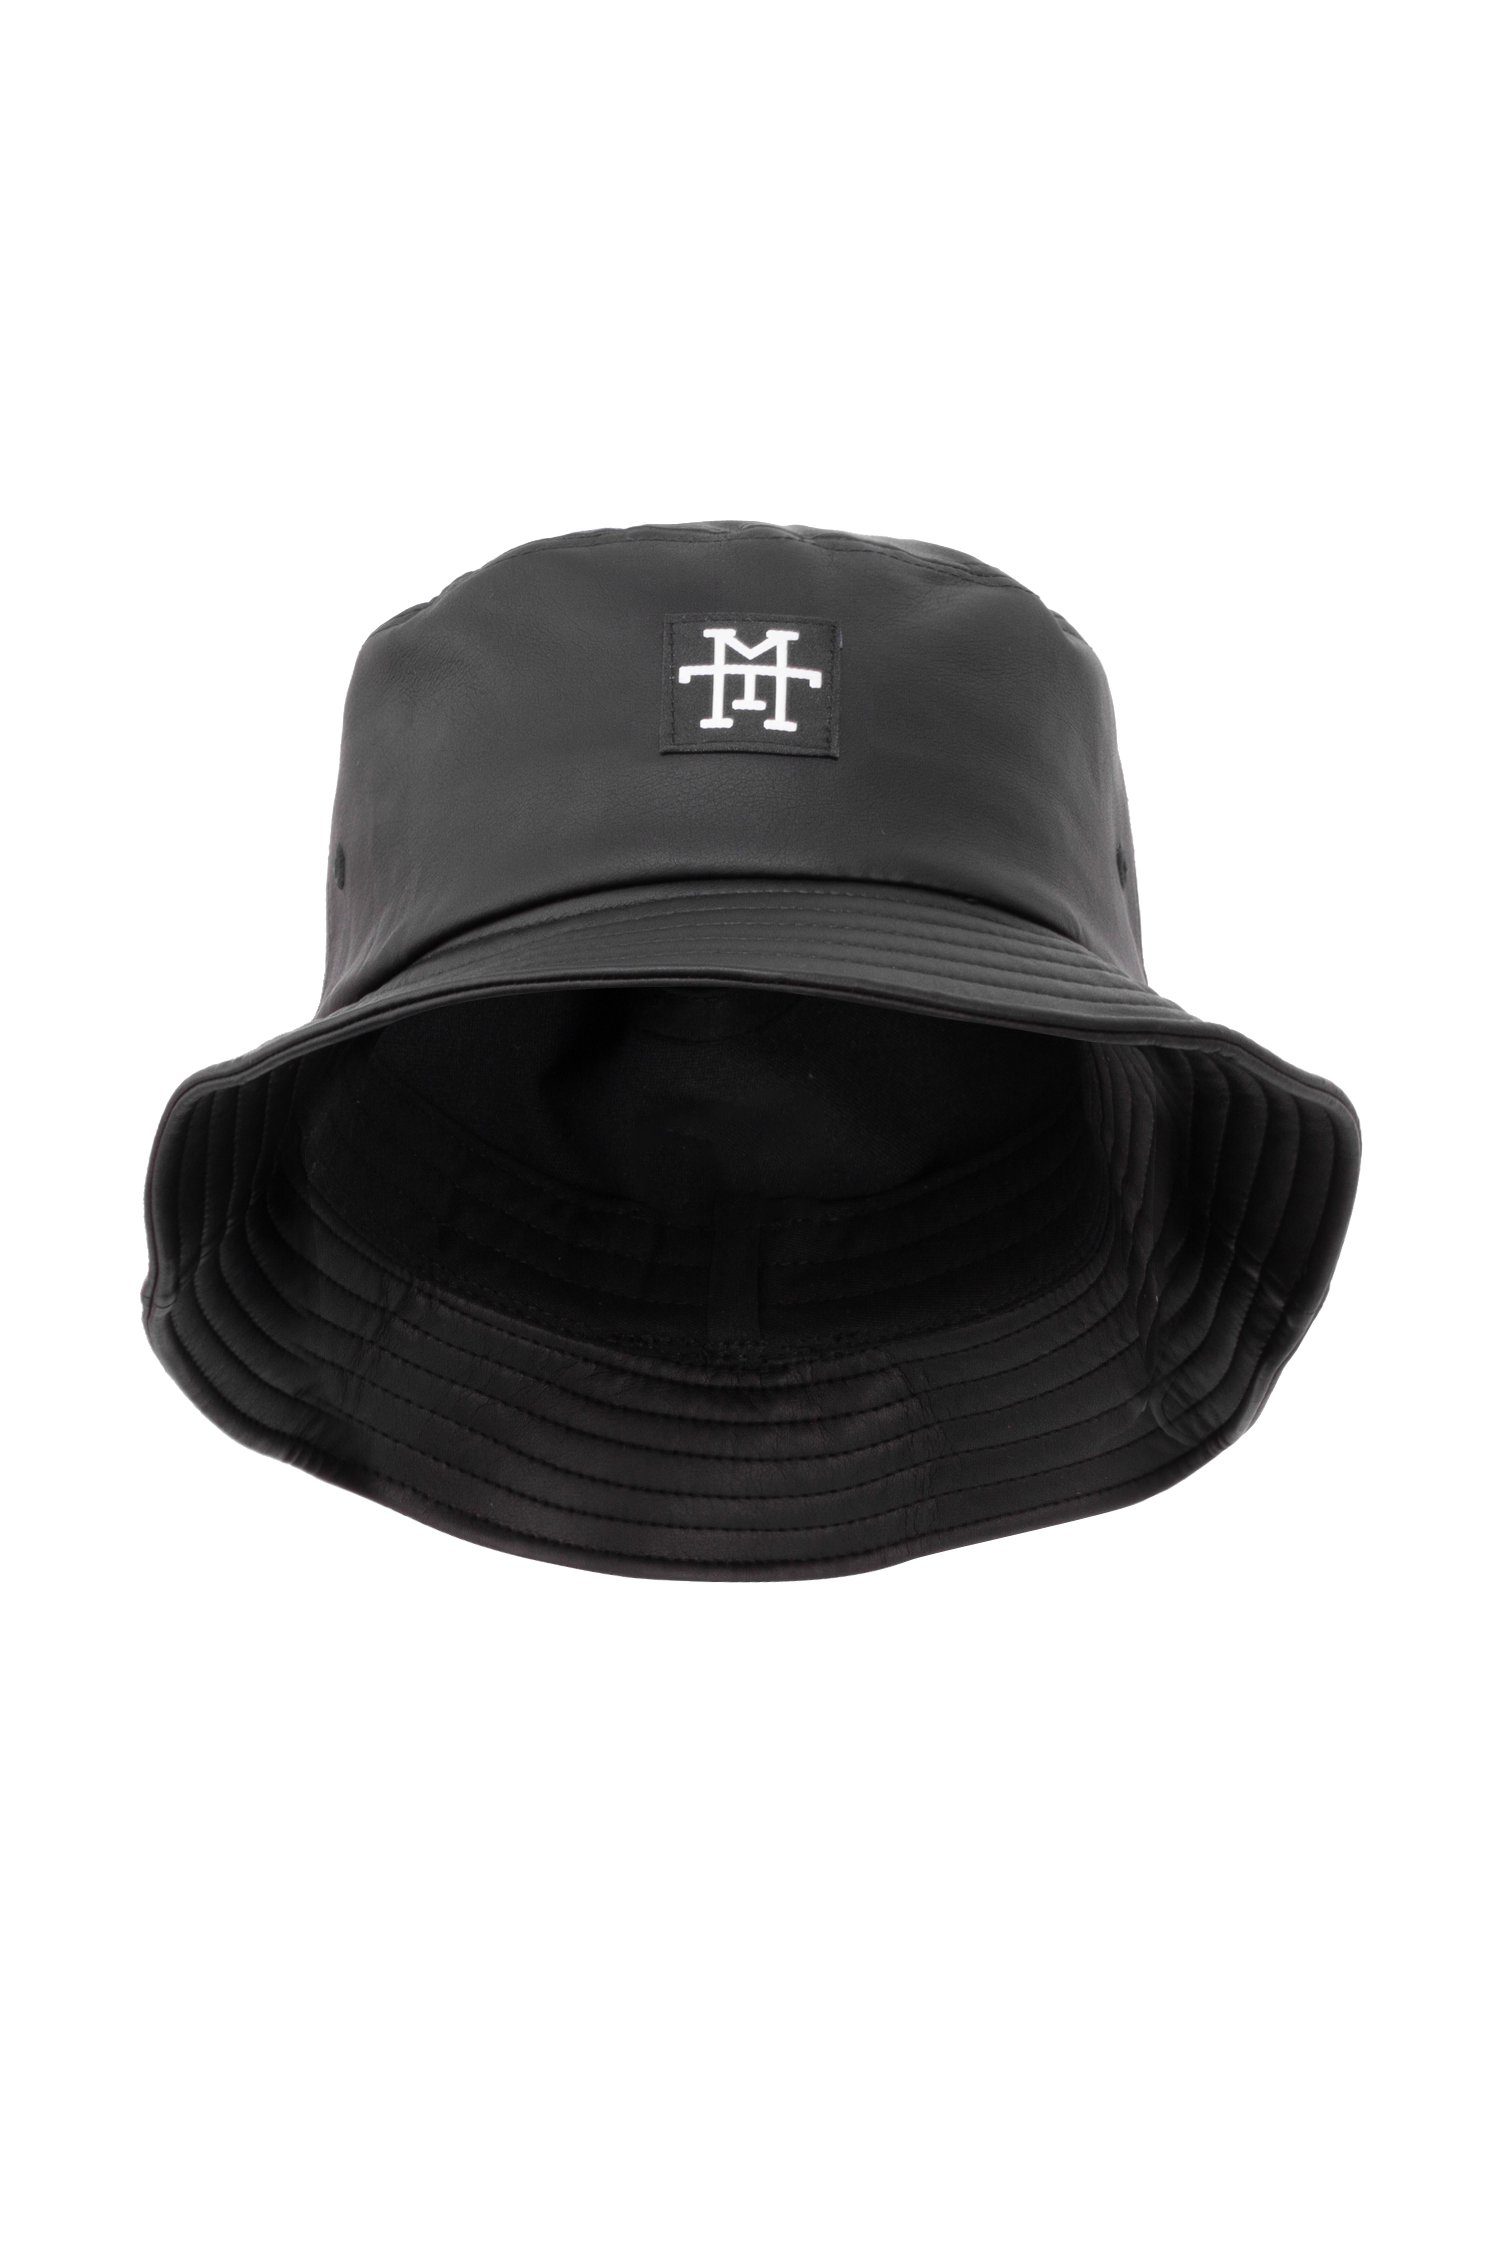 Manufaktur13 Fischerhut M13 Bucket Hat - Anglerhut, Session Hat, Fischermütze 100% Vegan Black Out (Leather)